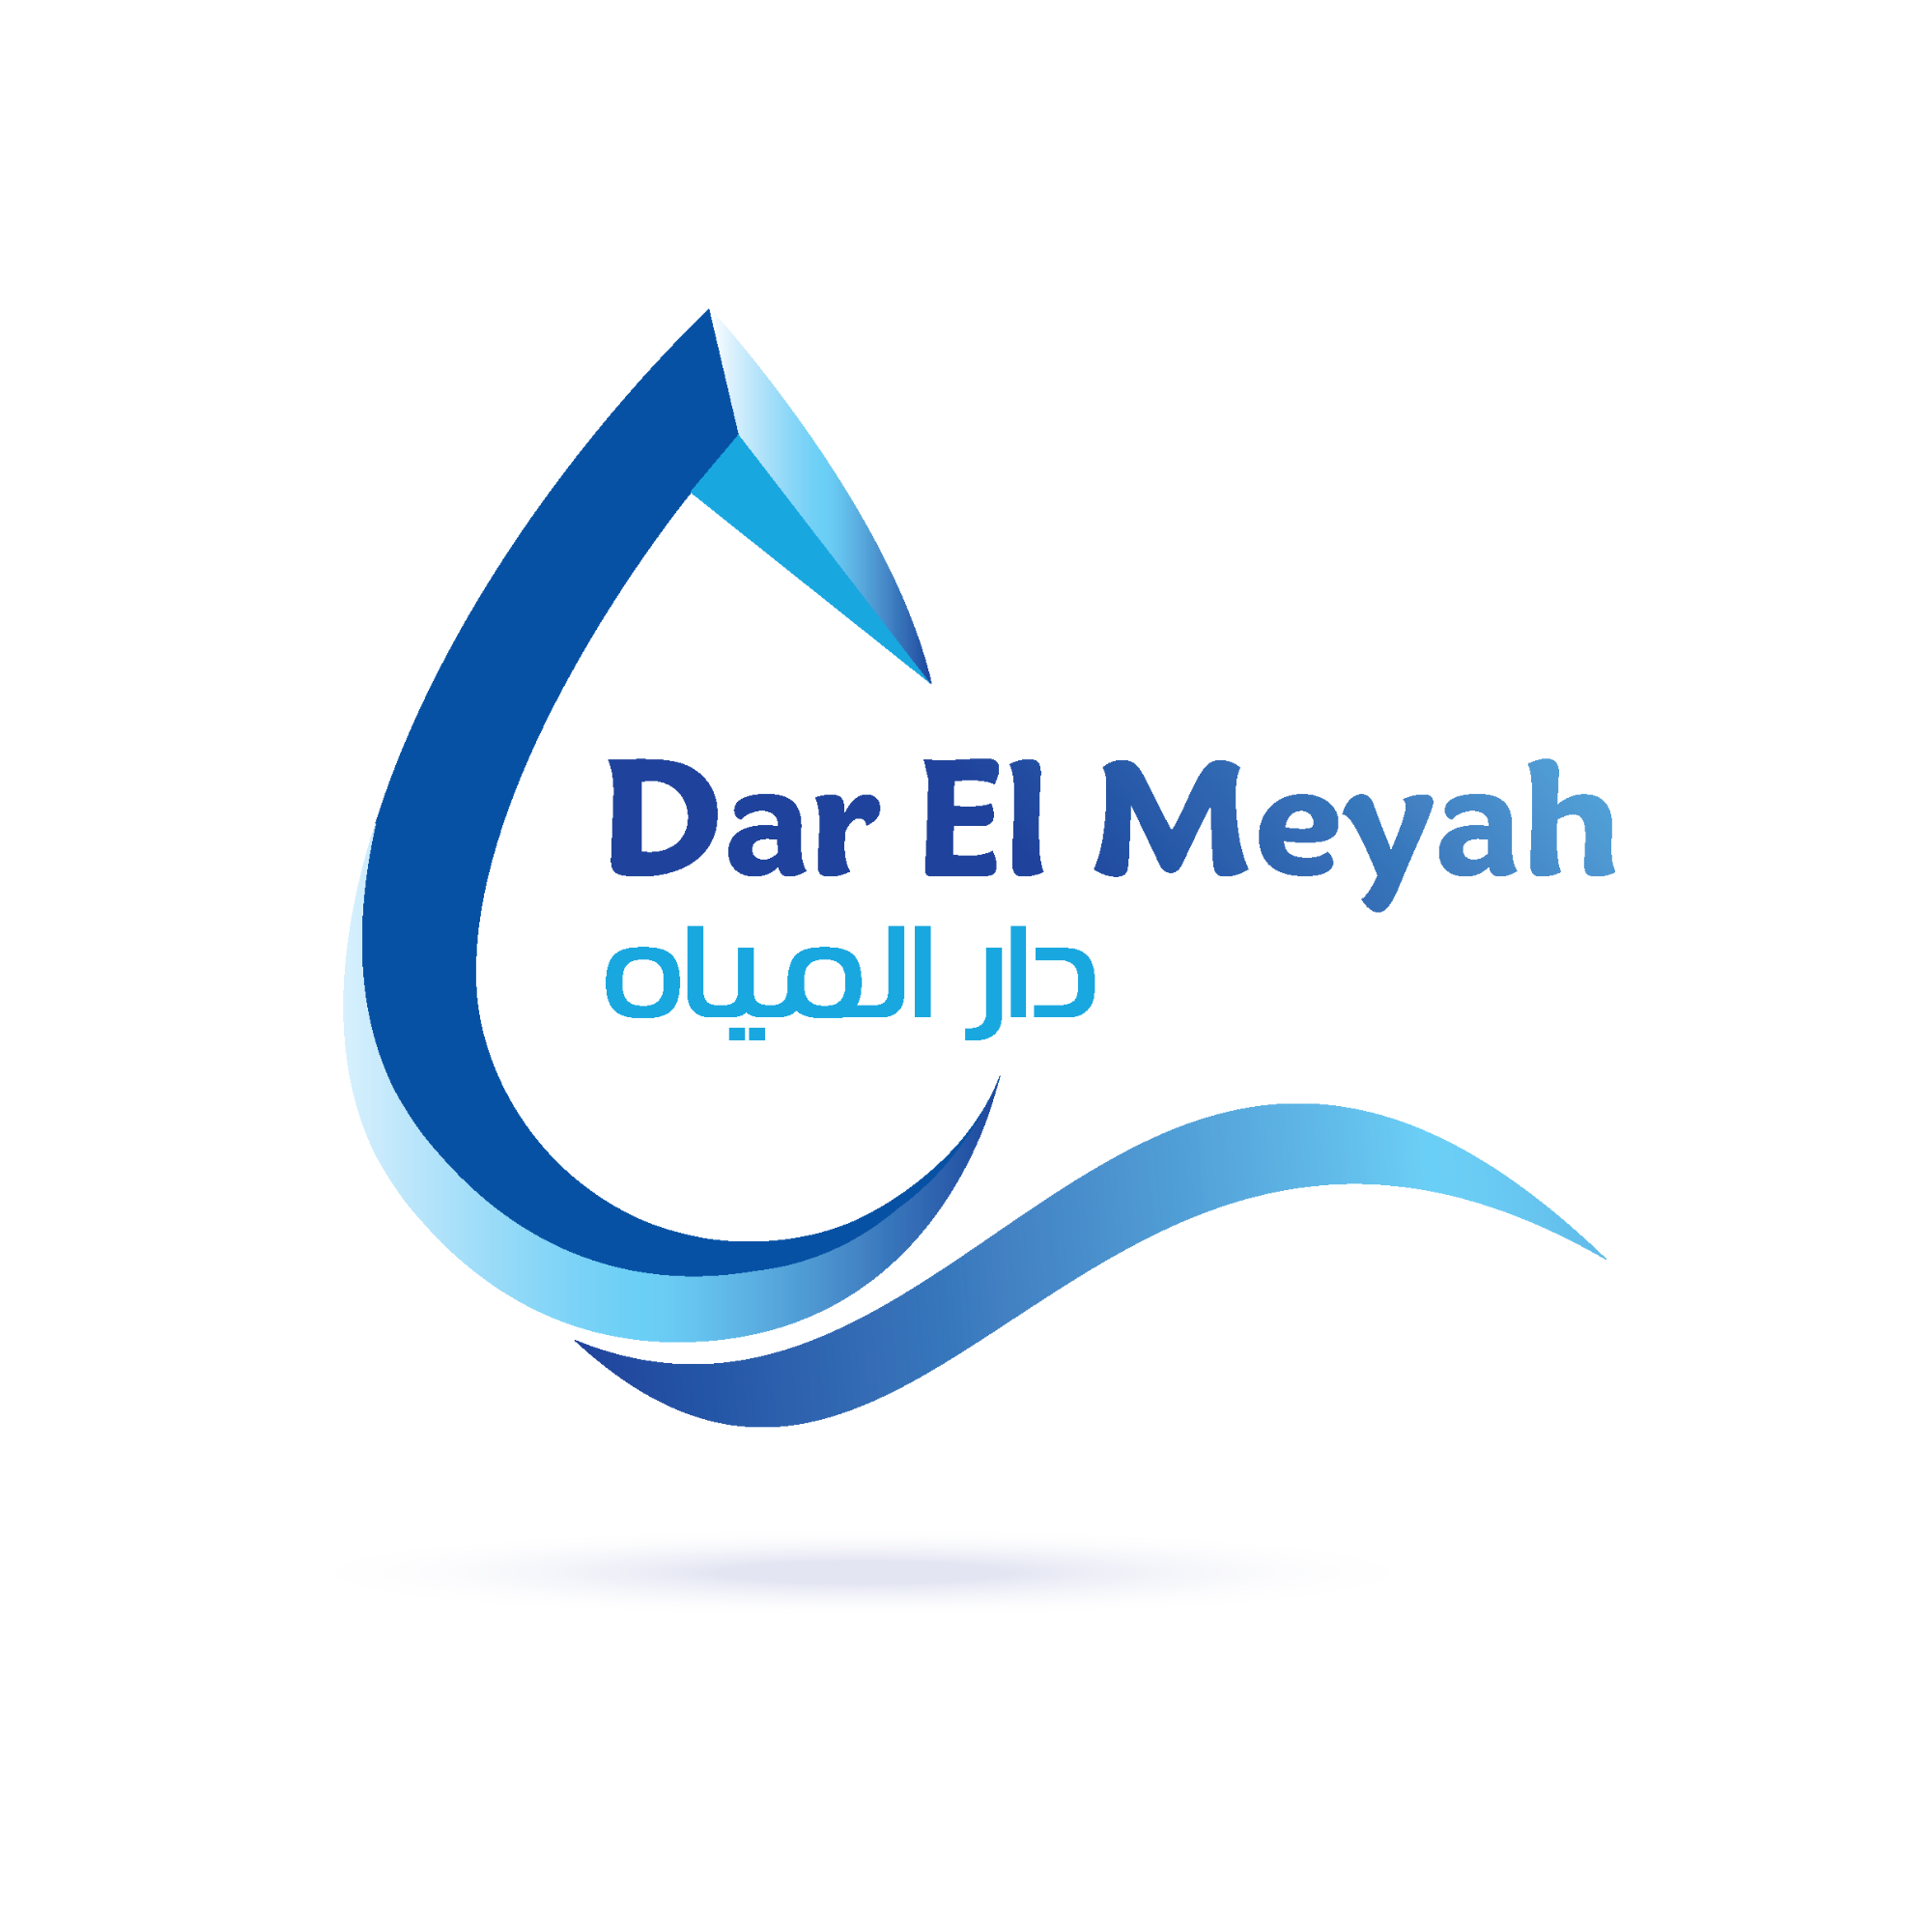 Dar ElMeyah - logo